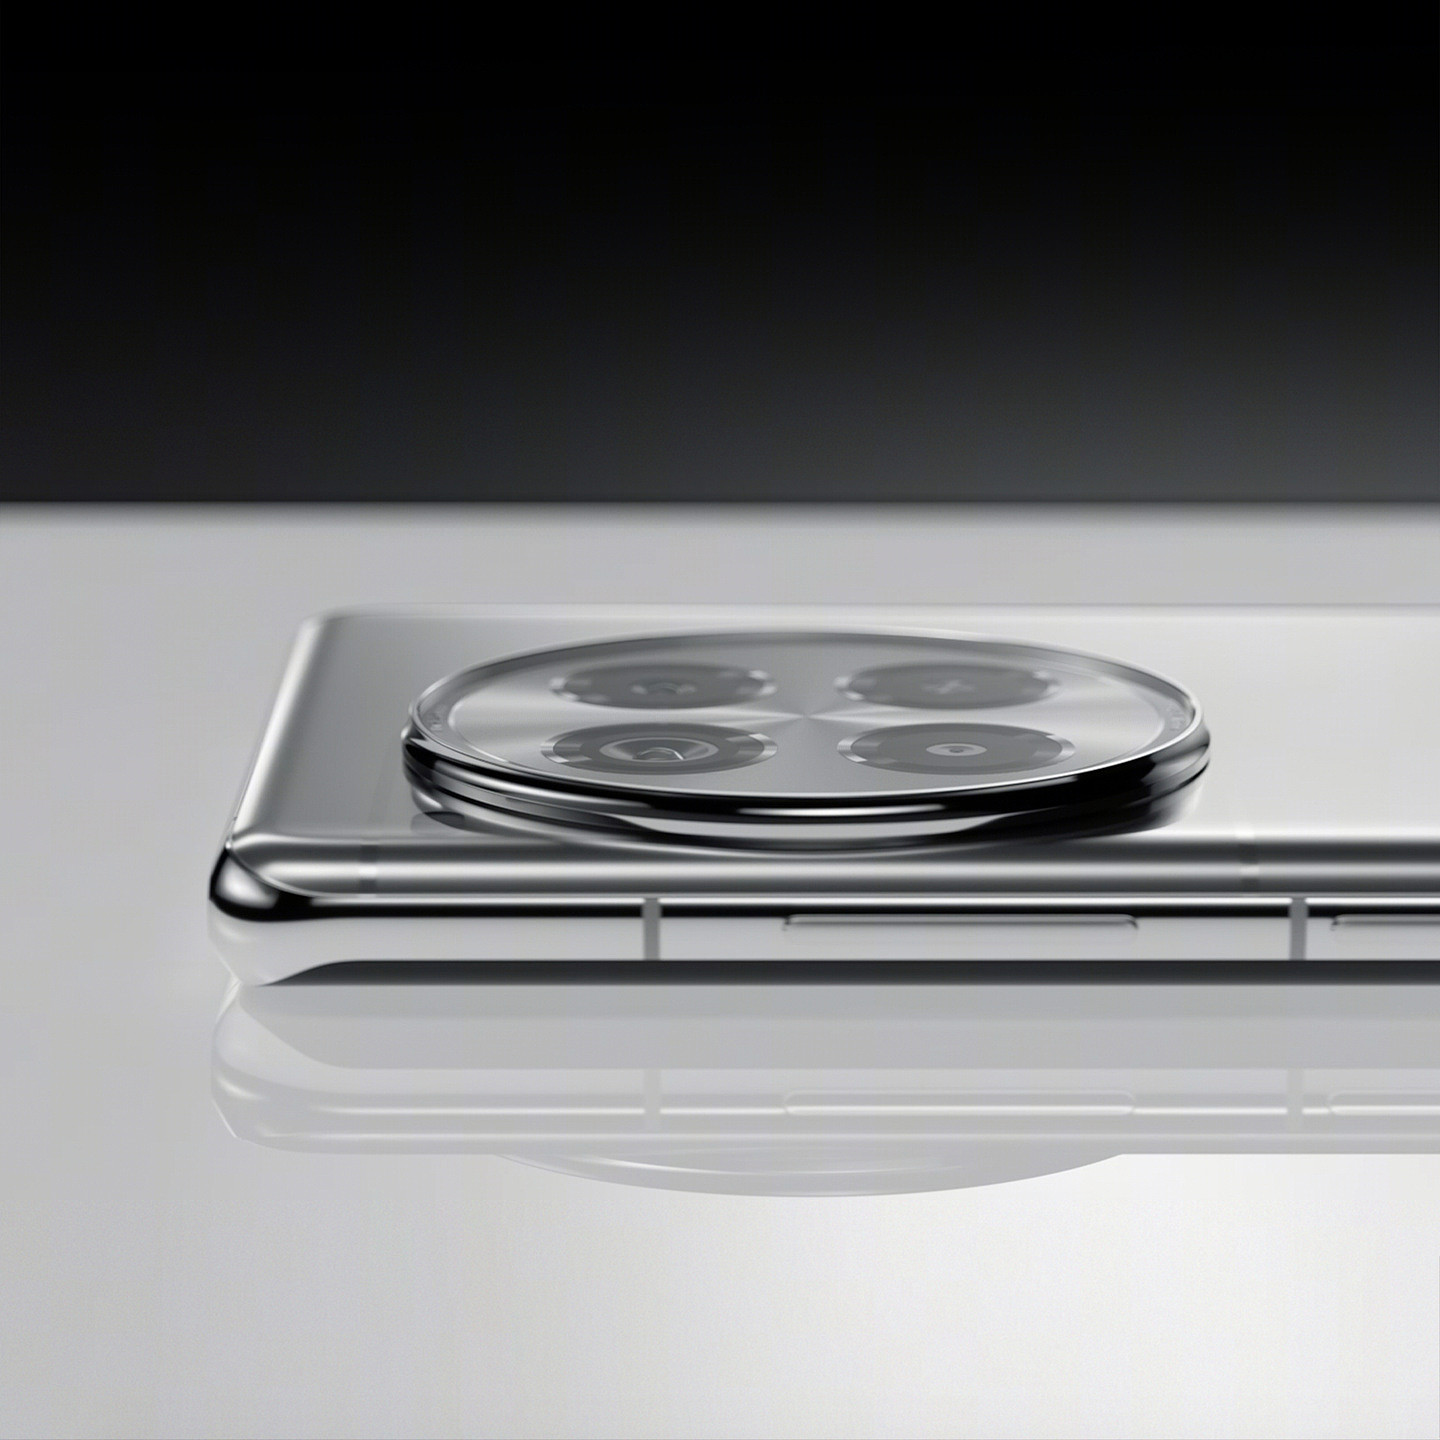 一加 Ace 3 Pro 手机新配色“钛空镜银”公布：首创液态金属玻璃工艺、银色亮面设计 - 3